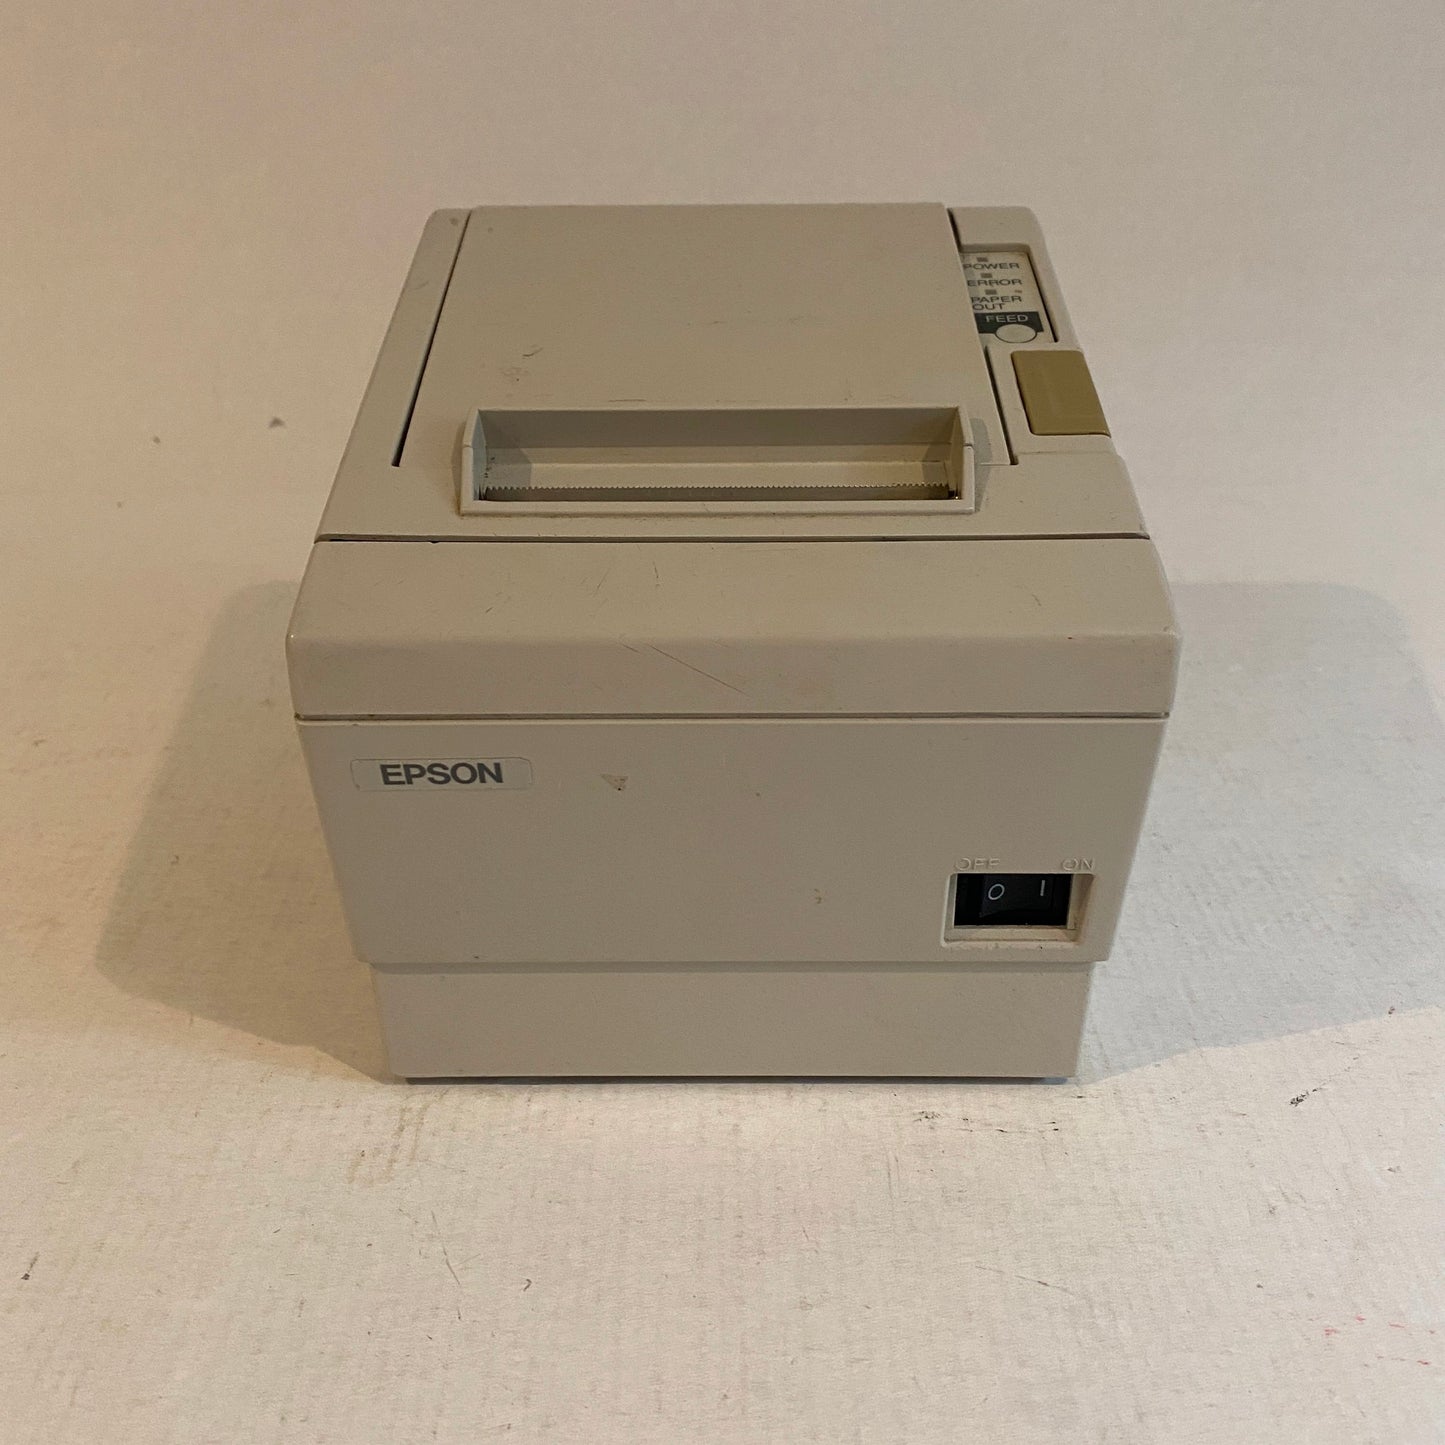 Epson USB Parallel Thermal Receipt Printer White - TM-T88IIIP - M129C